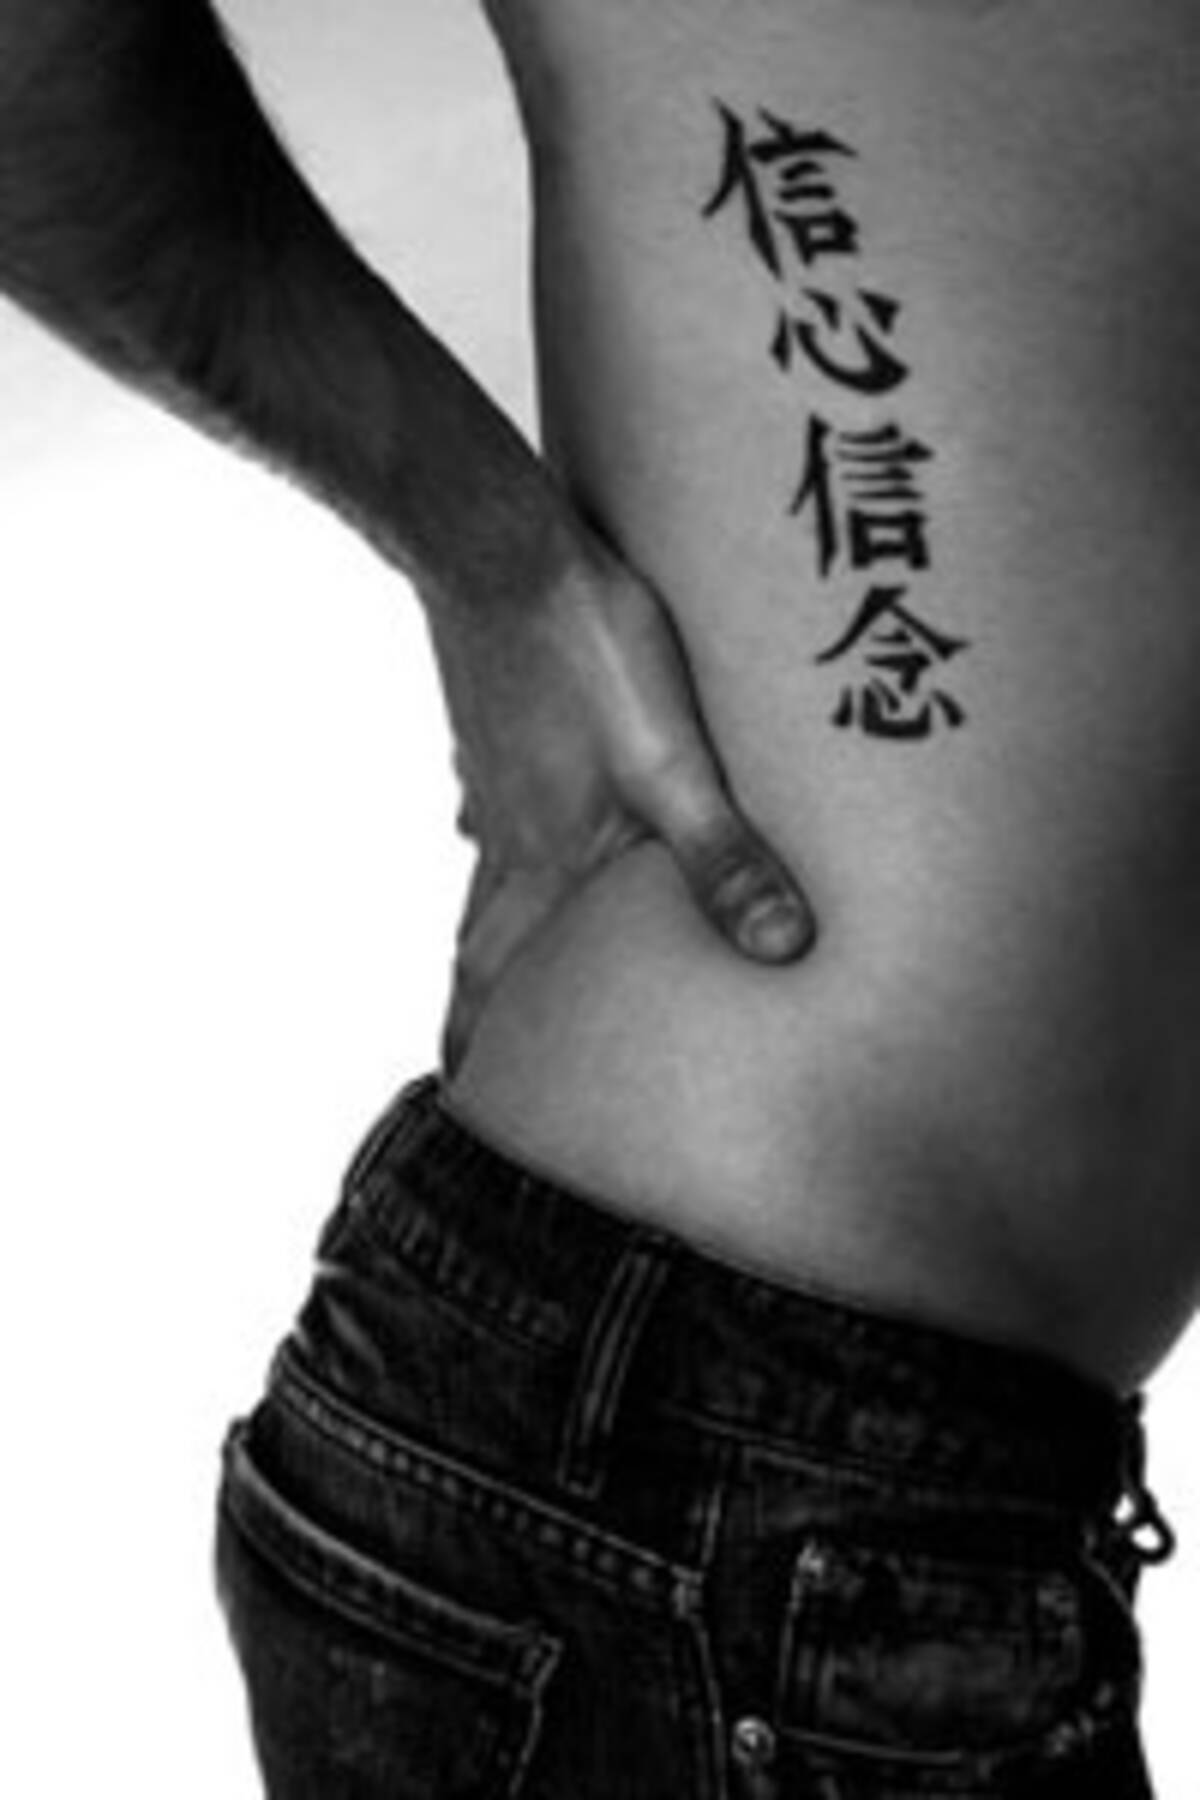 どうして外国人は 漢字のタトゥー を入れたがるの 中国メディア 15年10月16日 エキサイトニュース